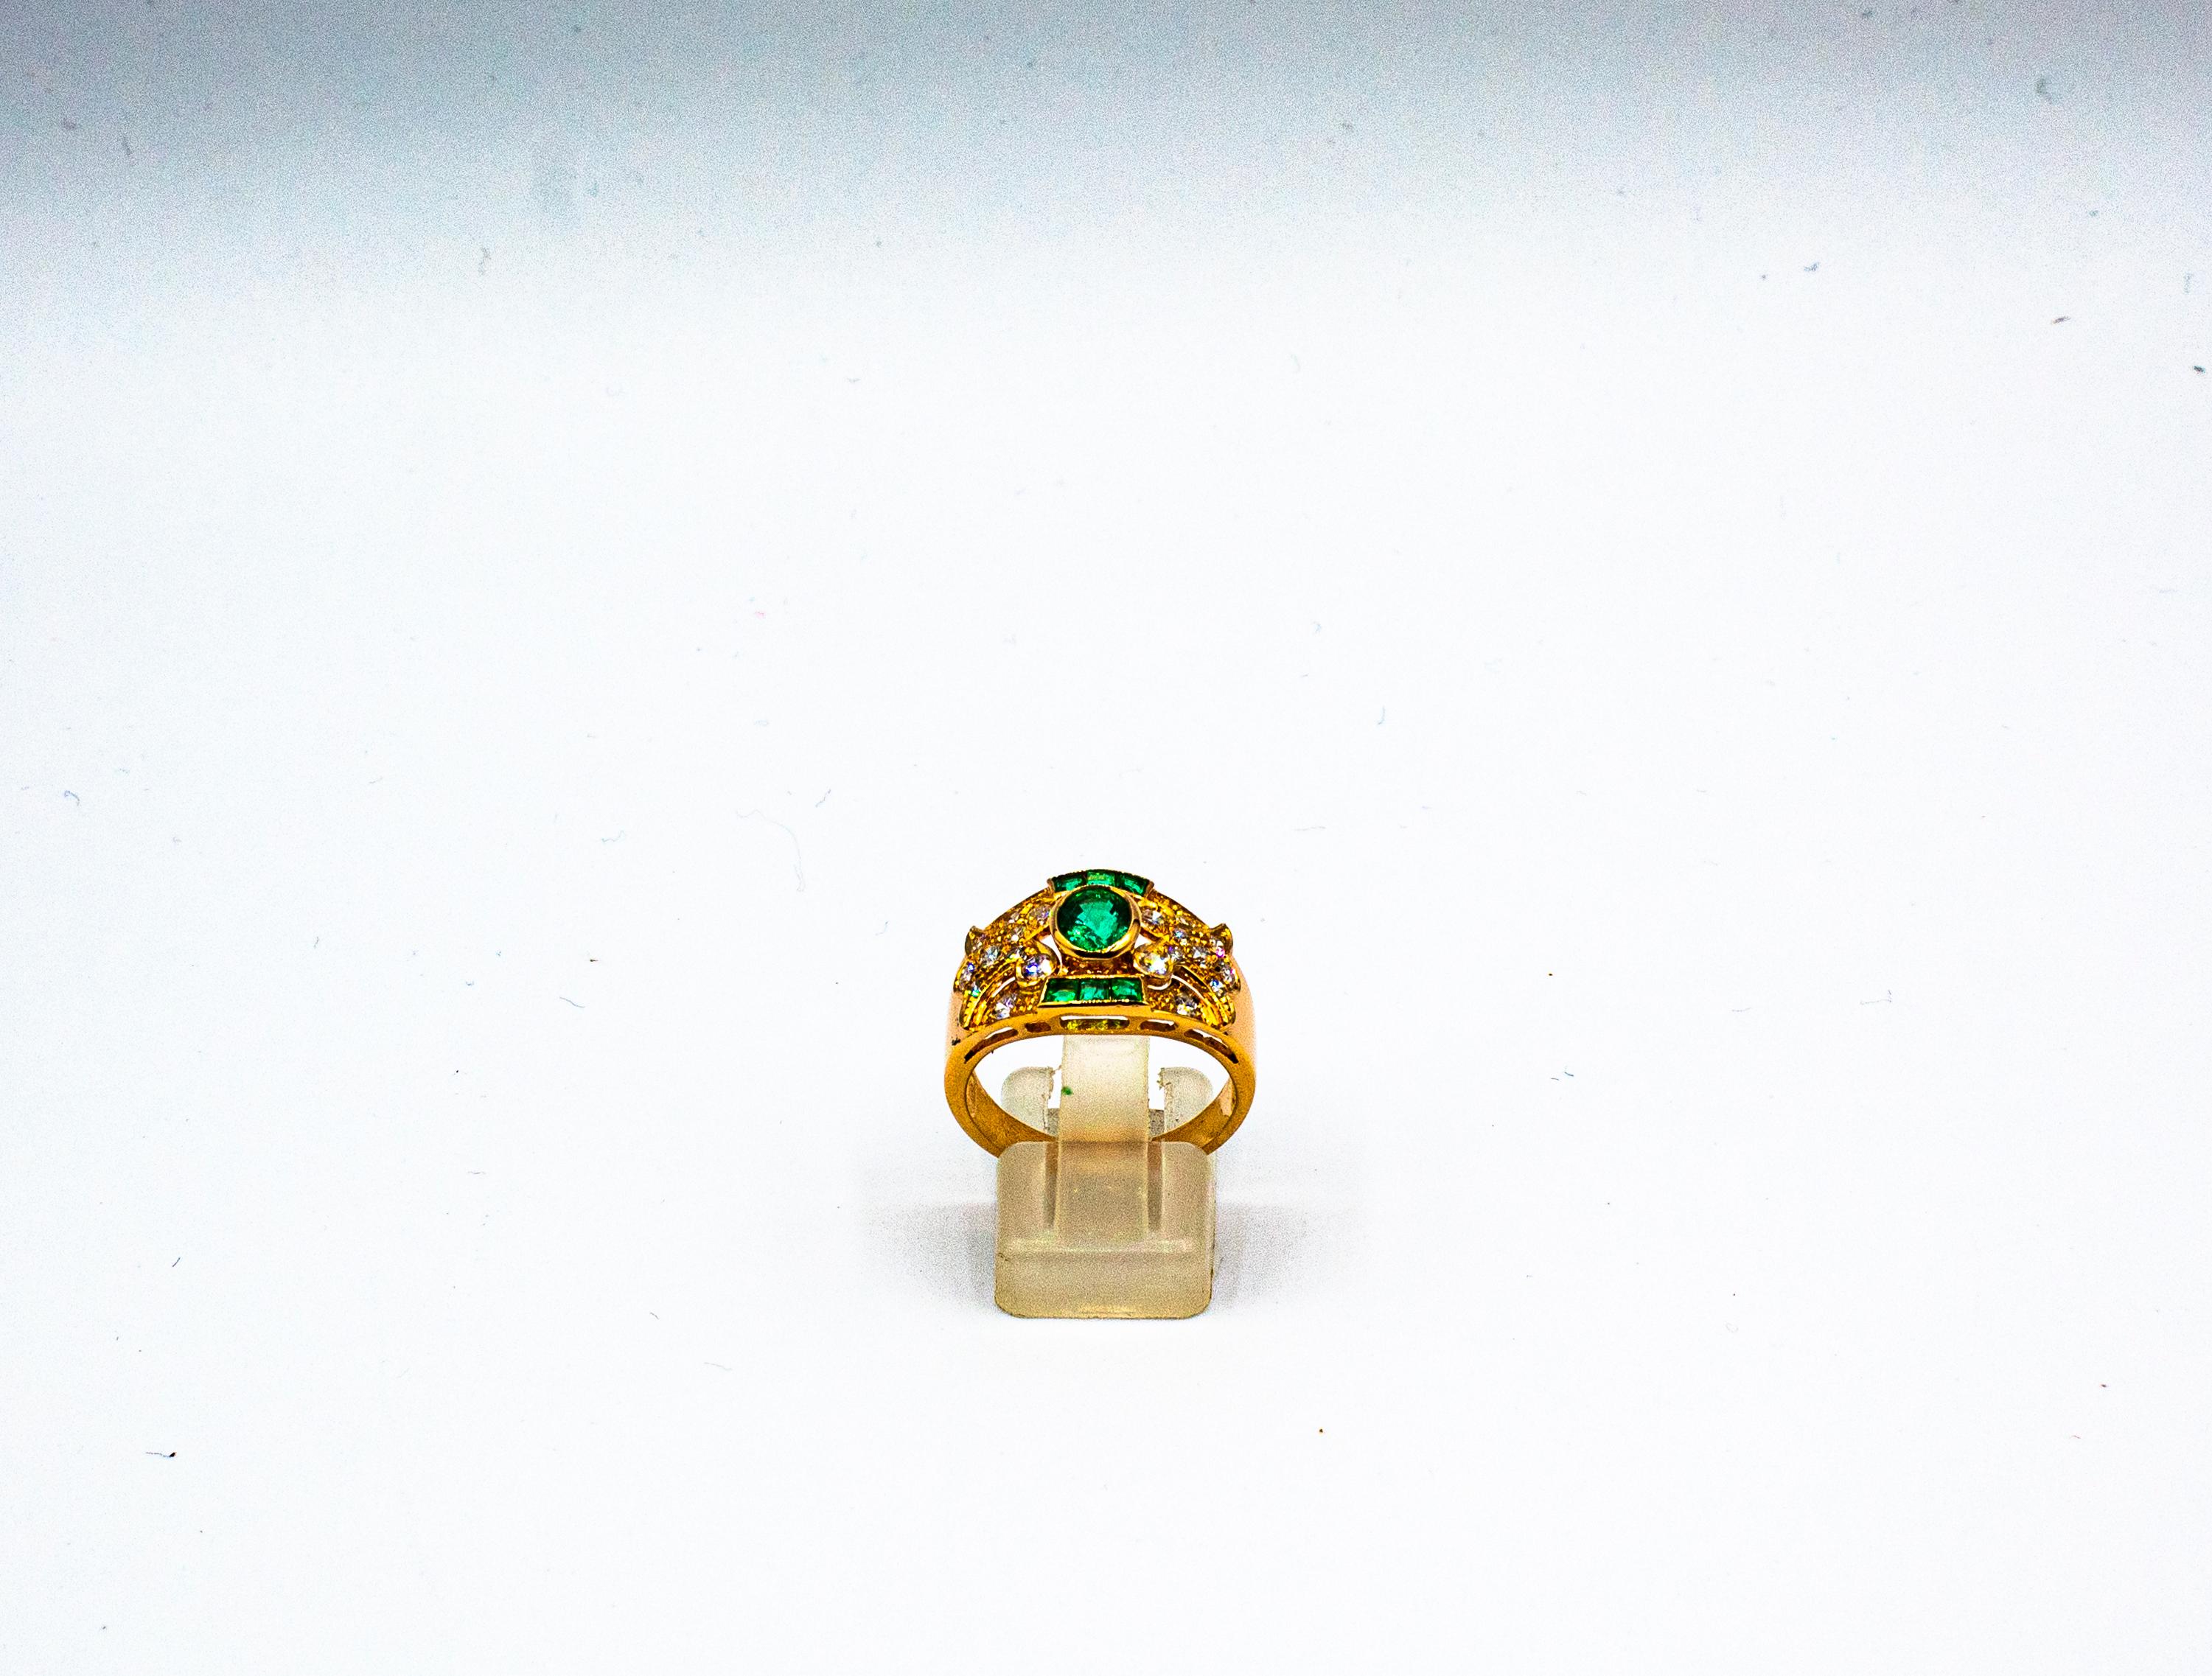 Dieser Ring ist aus 14K Gelbgold gefertigt.
Dieser Ring hat 0,56 Karat Diamanten im weißen Brillantschliff. Farbe: H-G Klarheit: VVS1
Dieser Ring hat eine 0,70 Karat natürlichen Sambia Oval Cut Smaragd.
Dieser Ring hat 0,30 Karat natürliche Smaragde